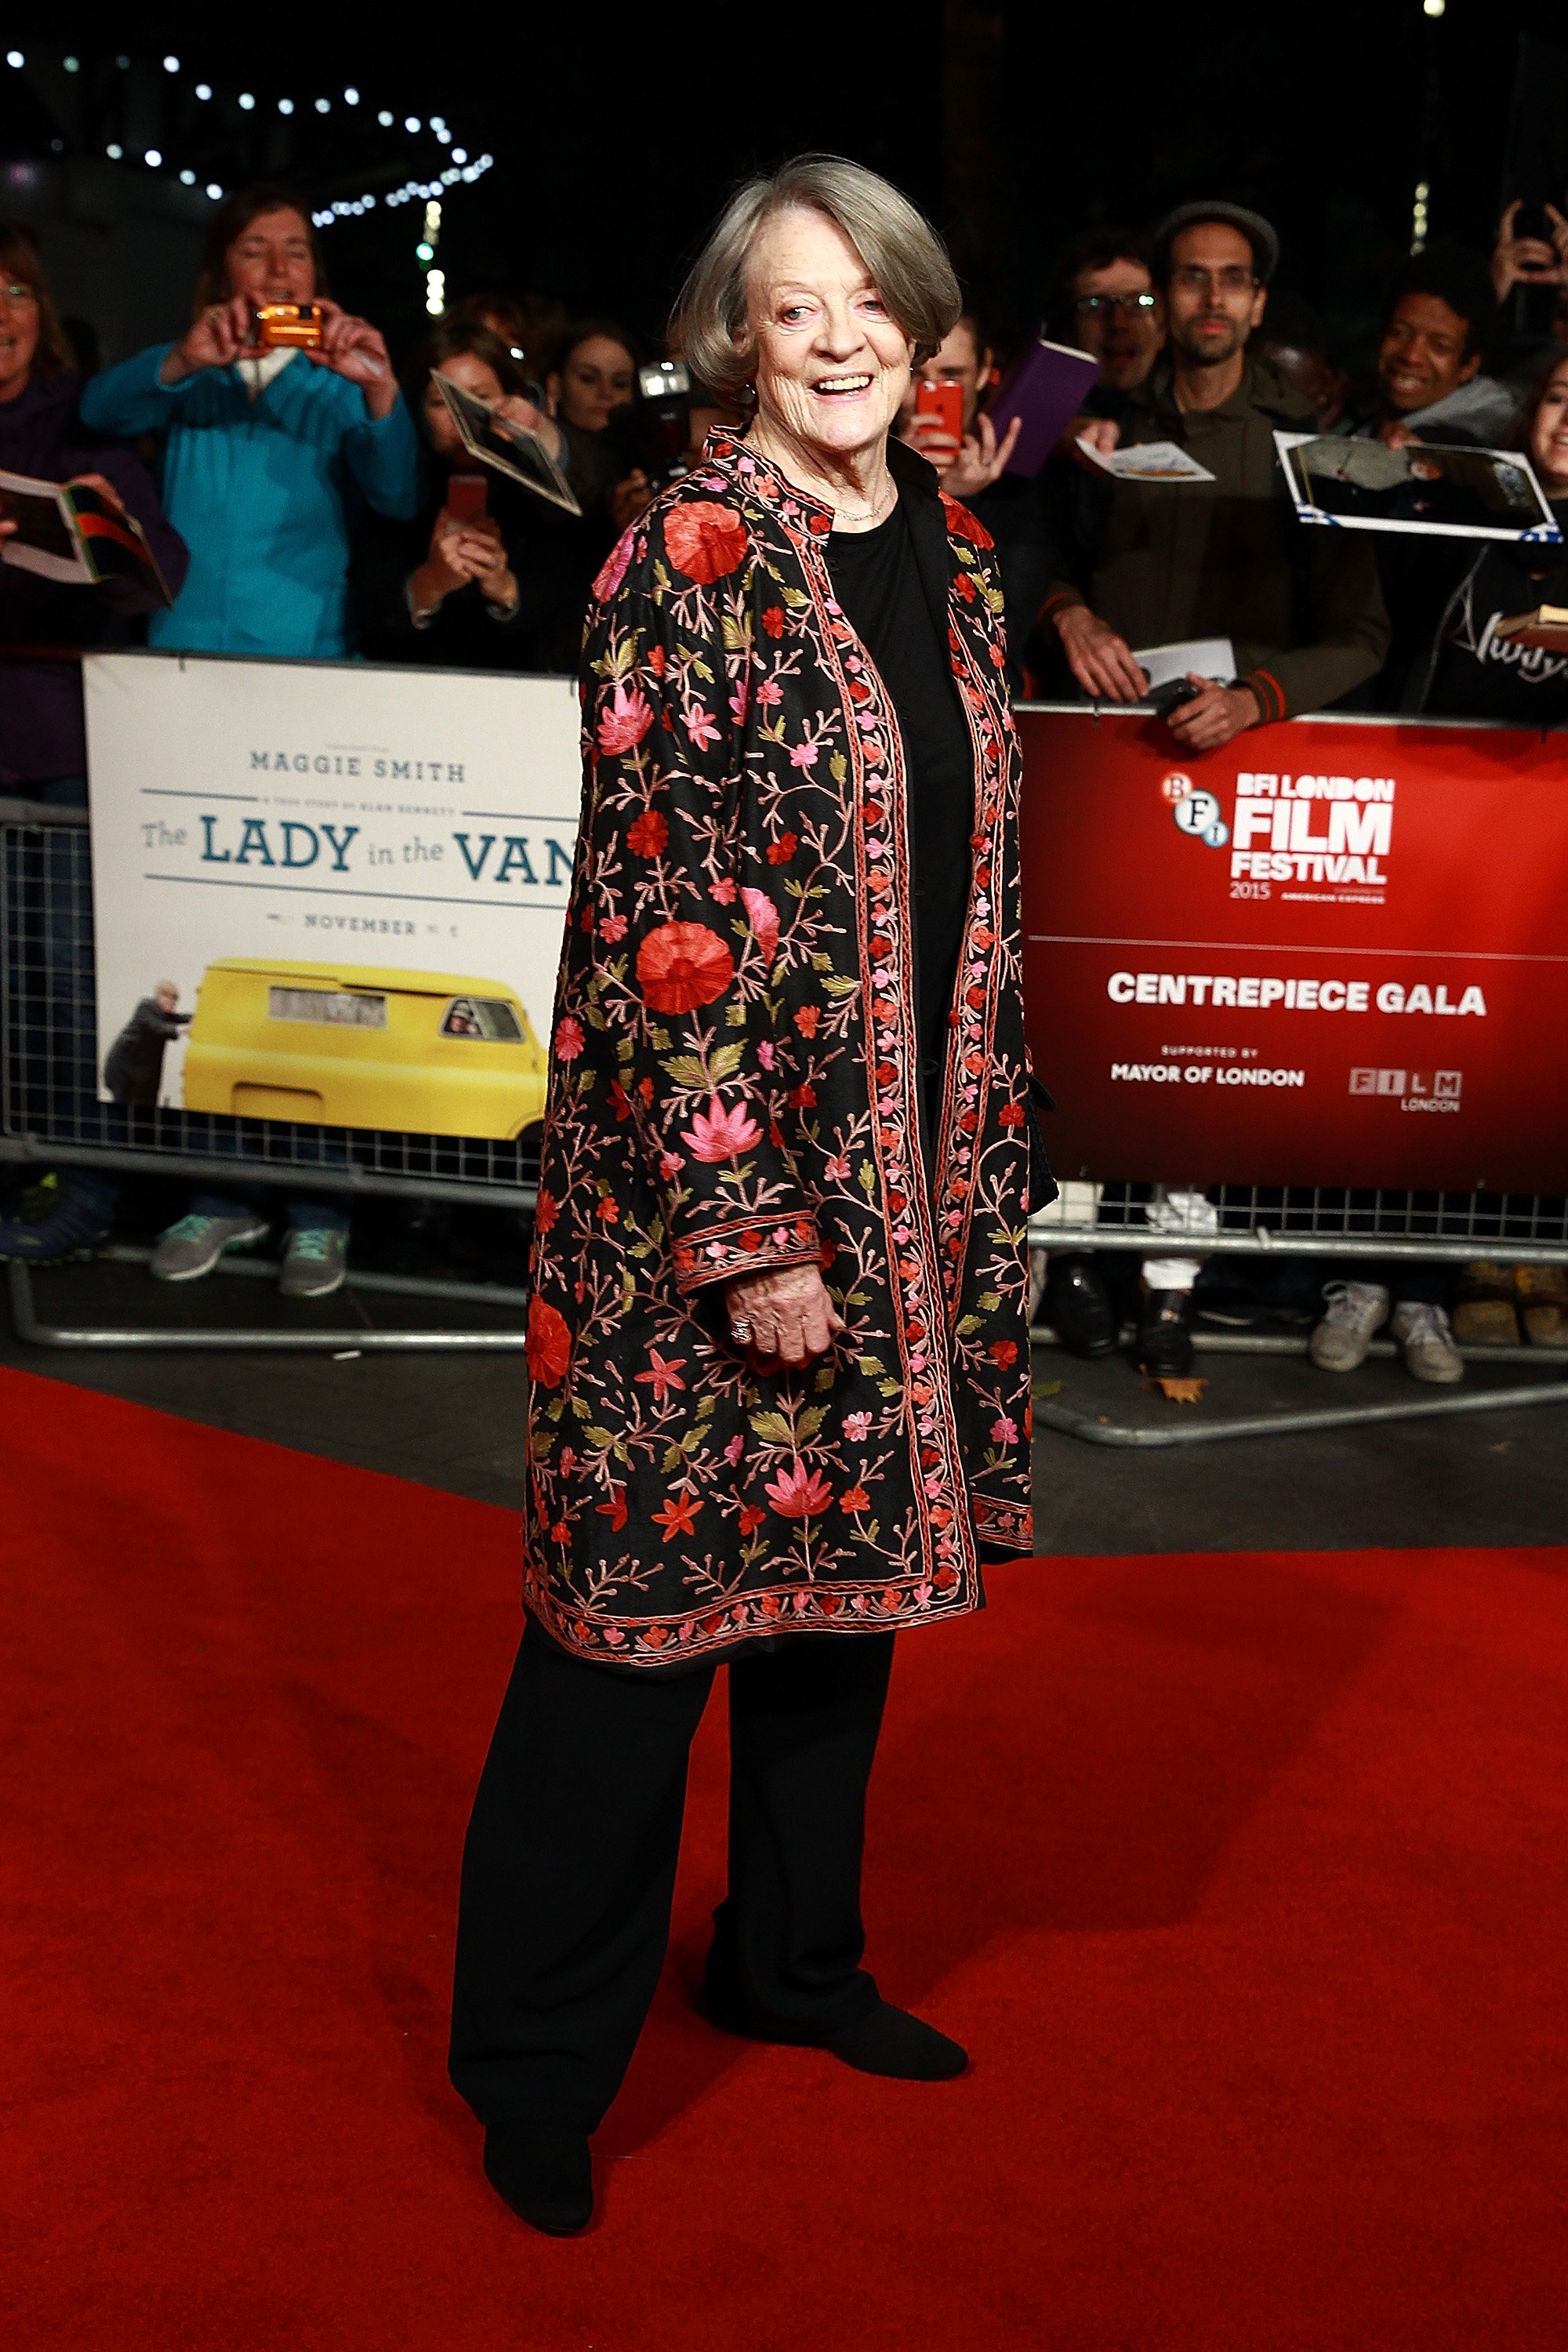 Maggie Smith lors de la projection de "The Lady in The Van" pendant le festival du film BFI de Londres à l'Odeon Leicester Square le 13 octobre 2015 | Photo : Getty Images